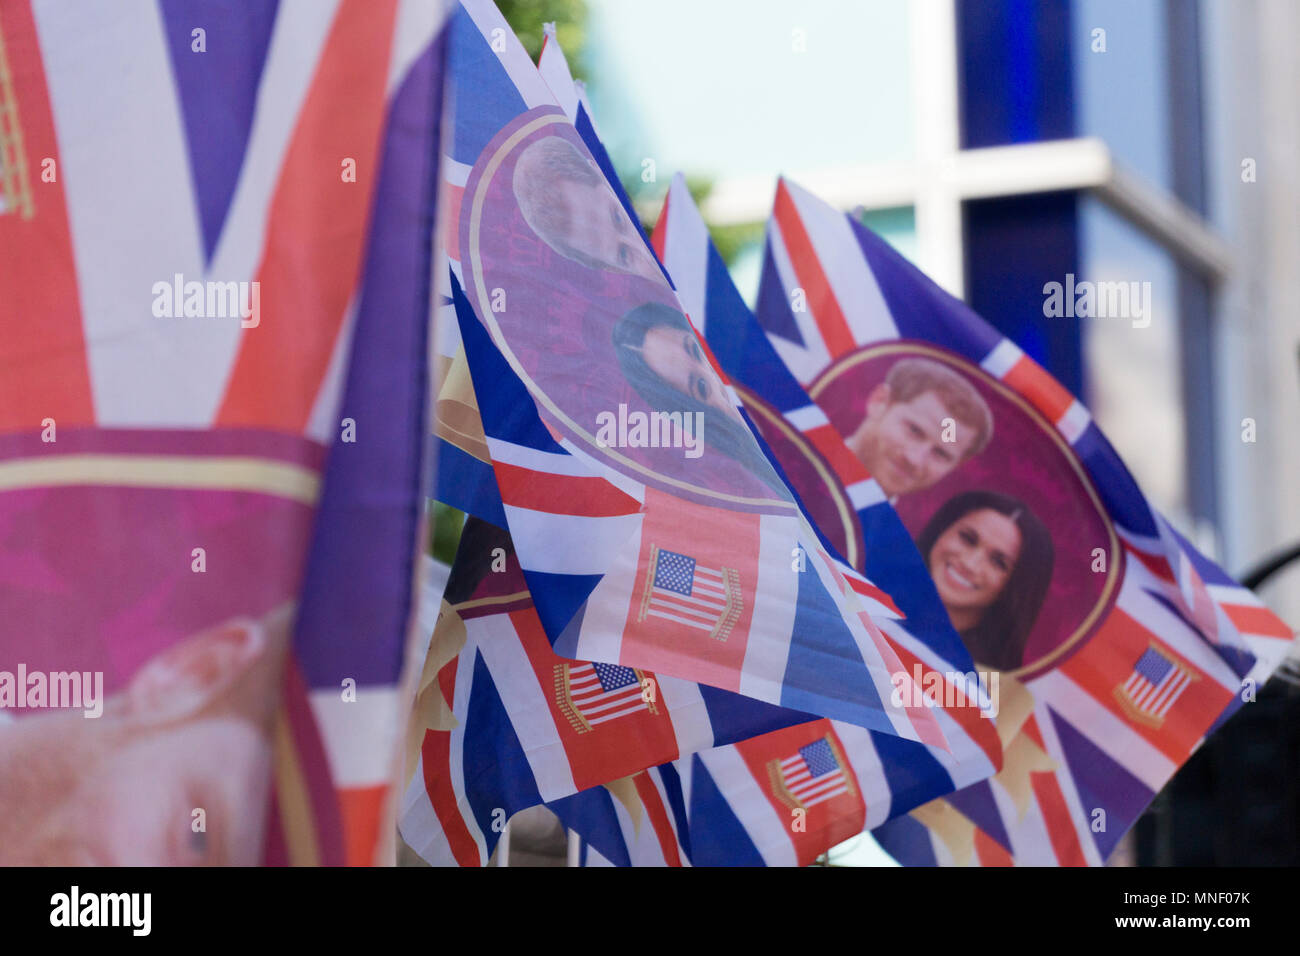 Londres, Royaume-Uni - 15 MAI 2018 : Union jack flag avec le prince Harry et Meghan Markle sur pour célébrer le mariage royal. Banque D'Images